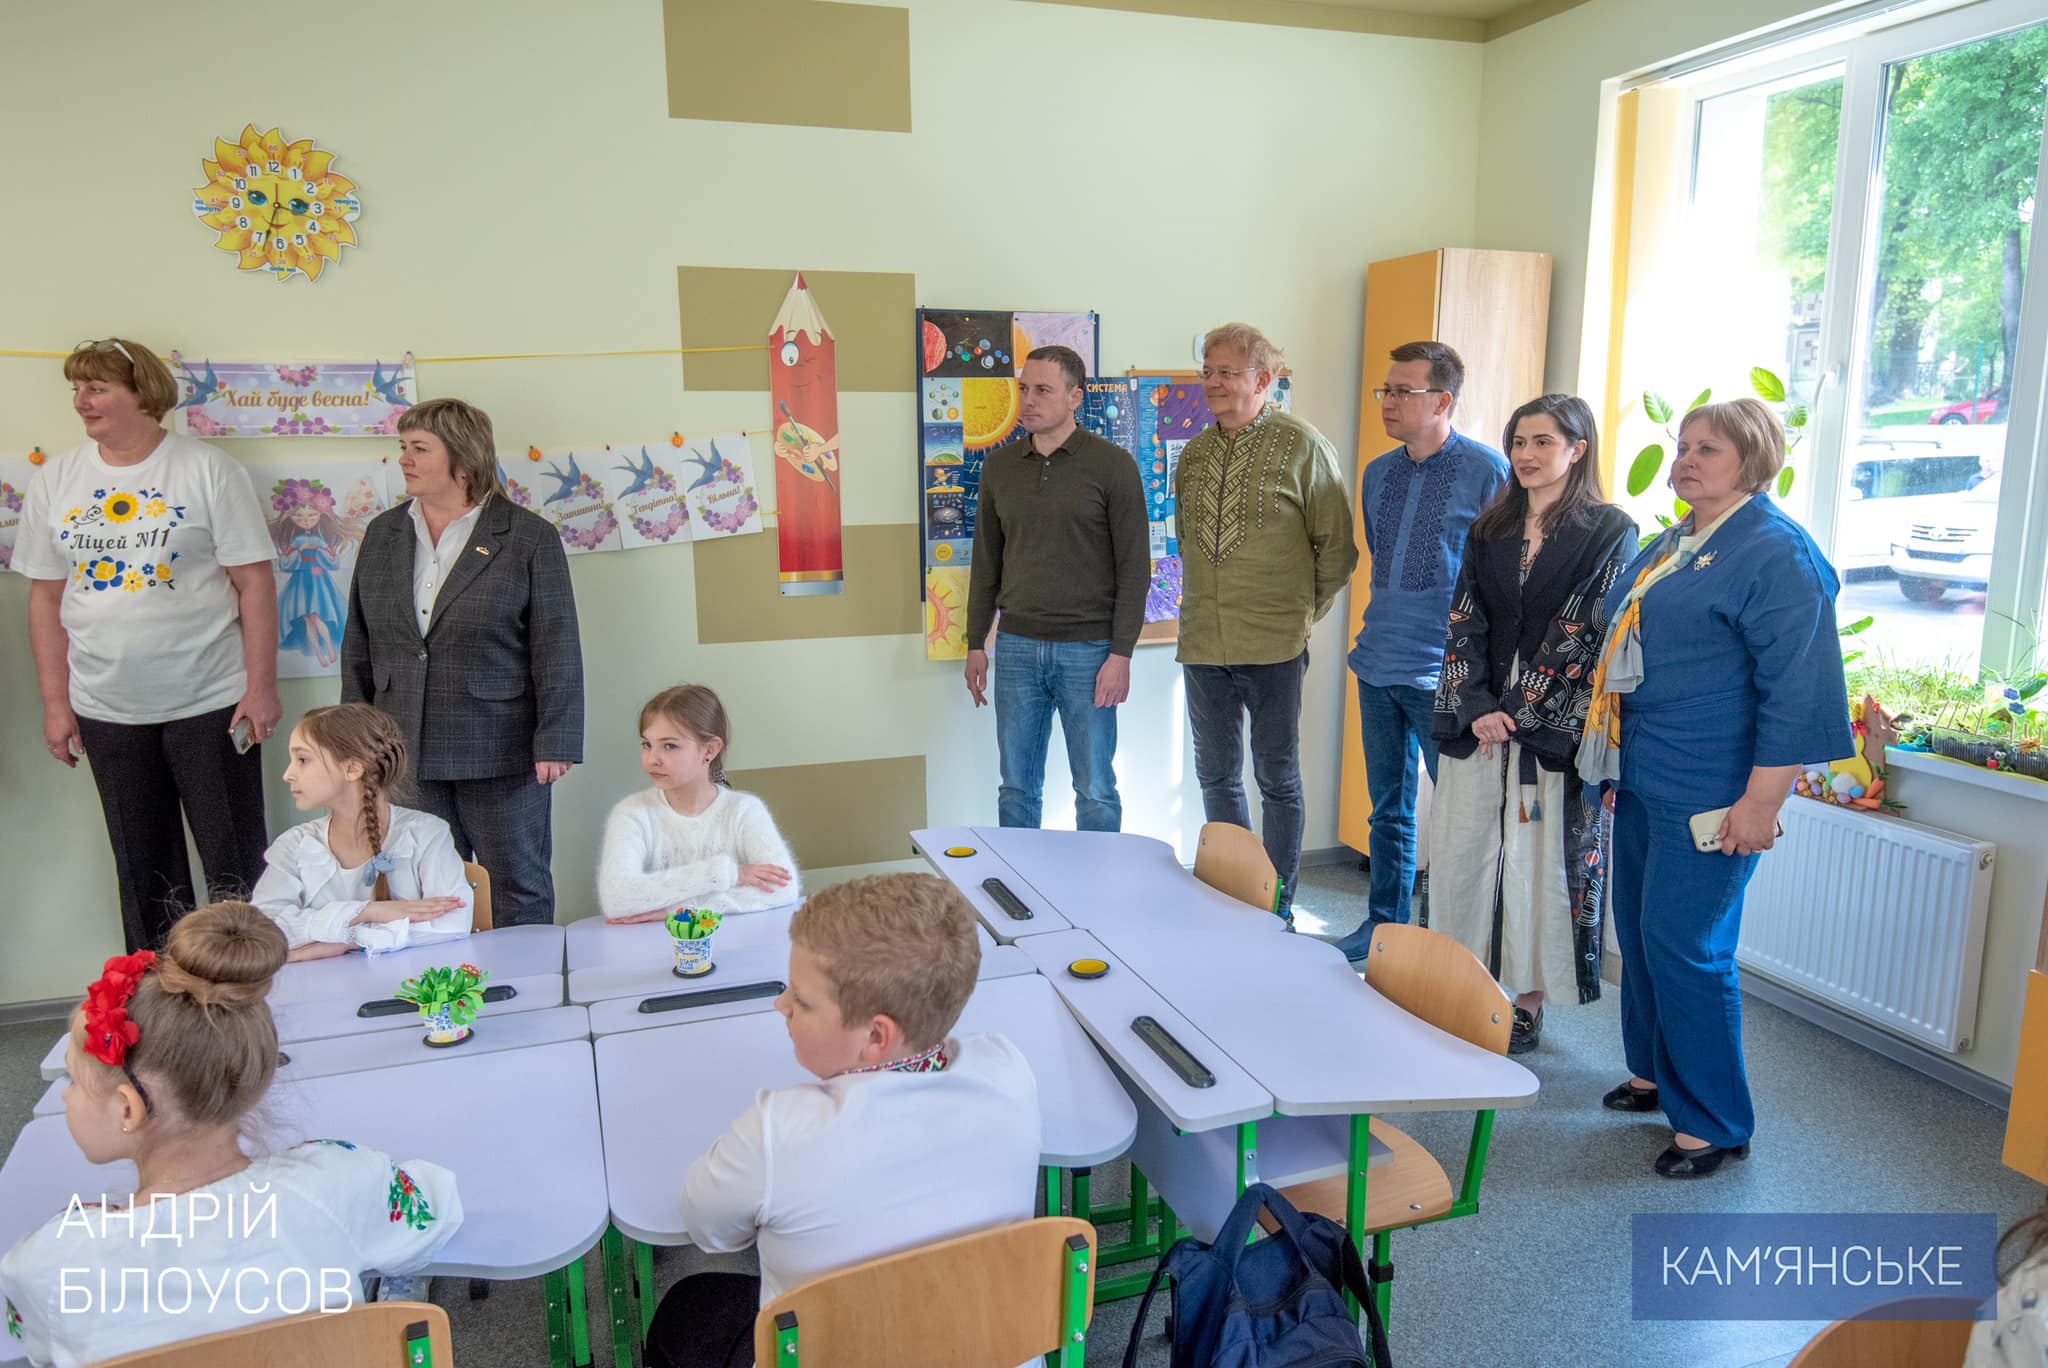 Мэр Каменского Андрей Белоусов объявил об открытии новой школы - фото 3